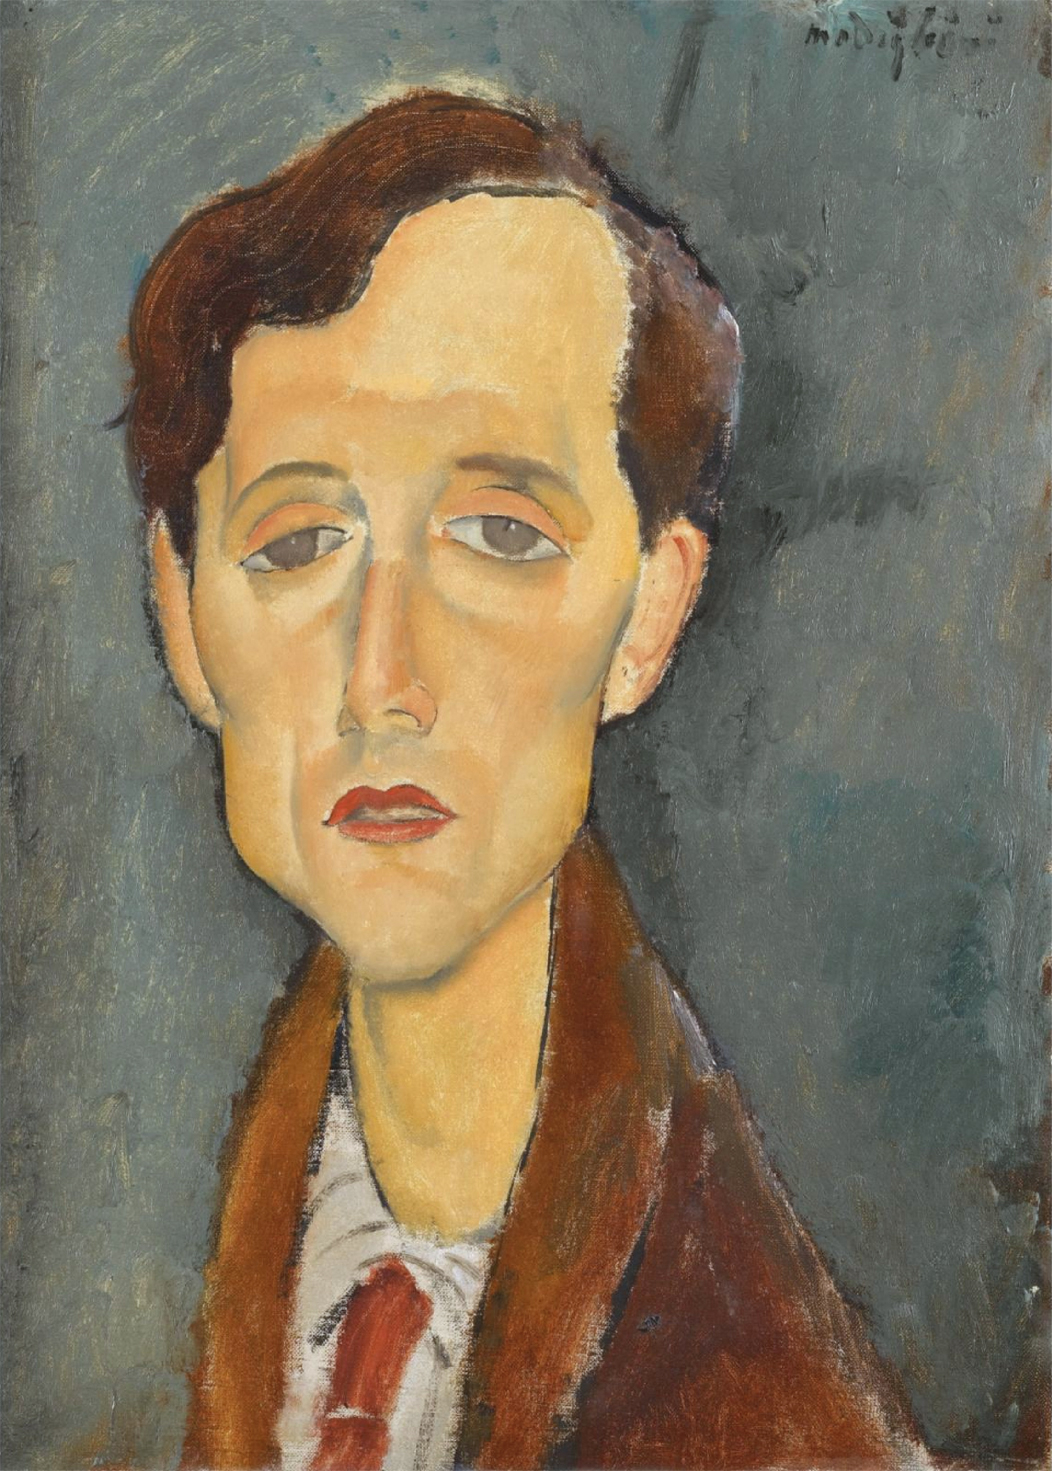 Franz Hellens by Amedeo Modigliani - 1919 - 46 x 34 cm 